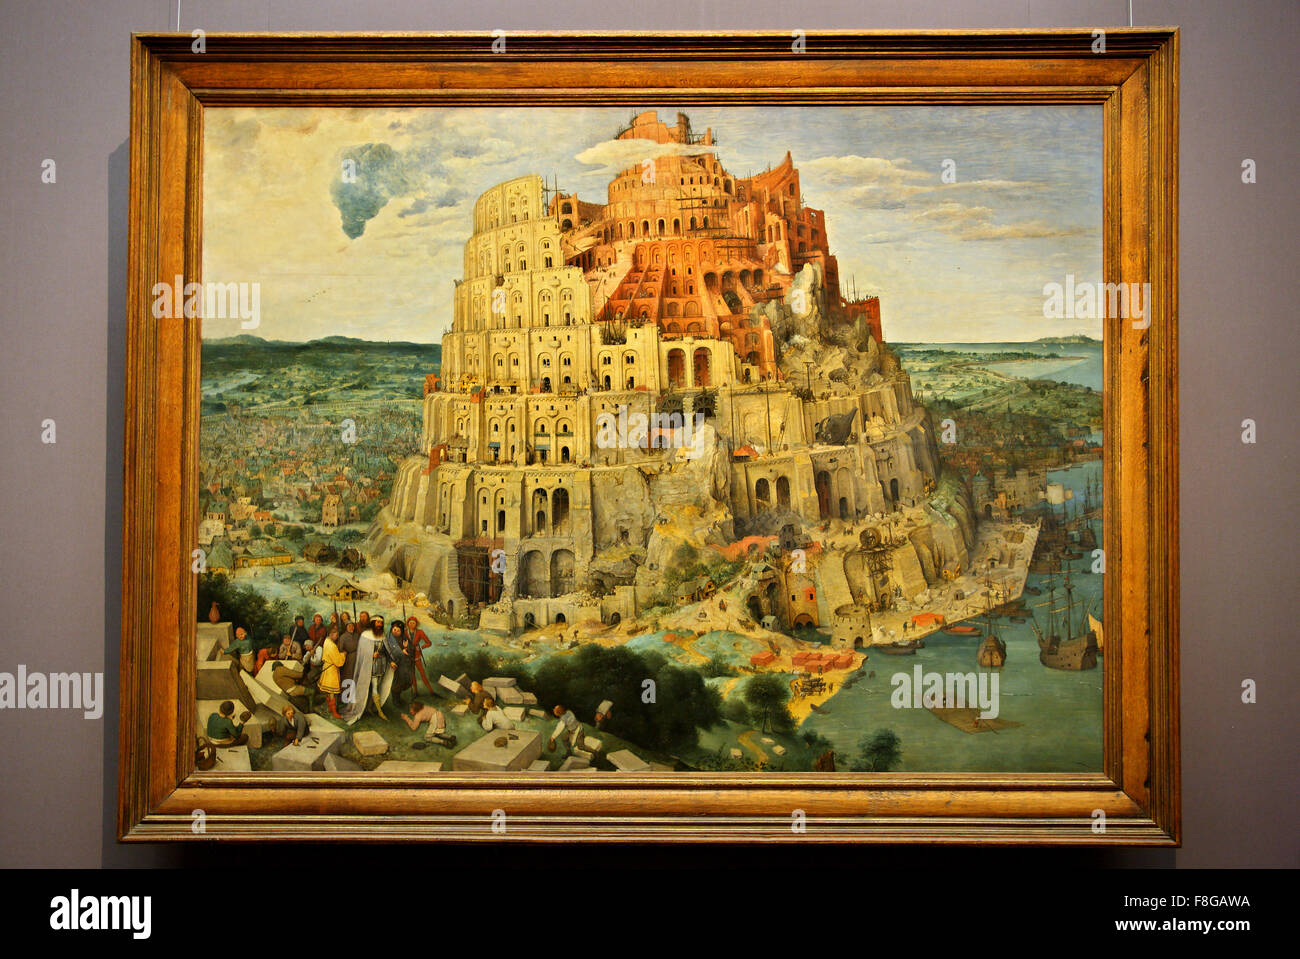 art mural La Petite Tour de Babel Pieter Brueghel l'Ancien - Poster métal